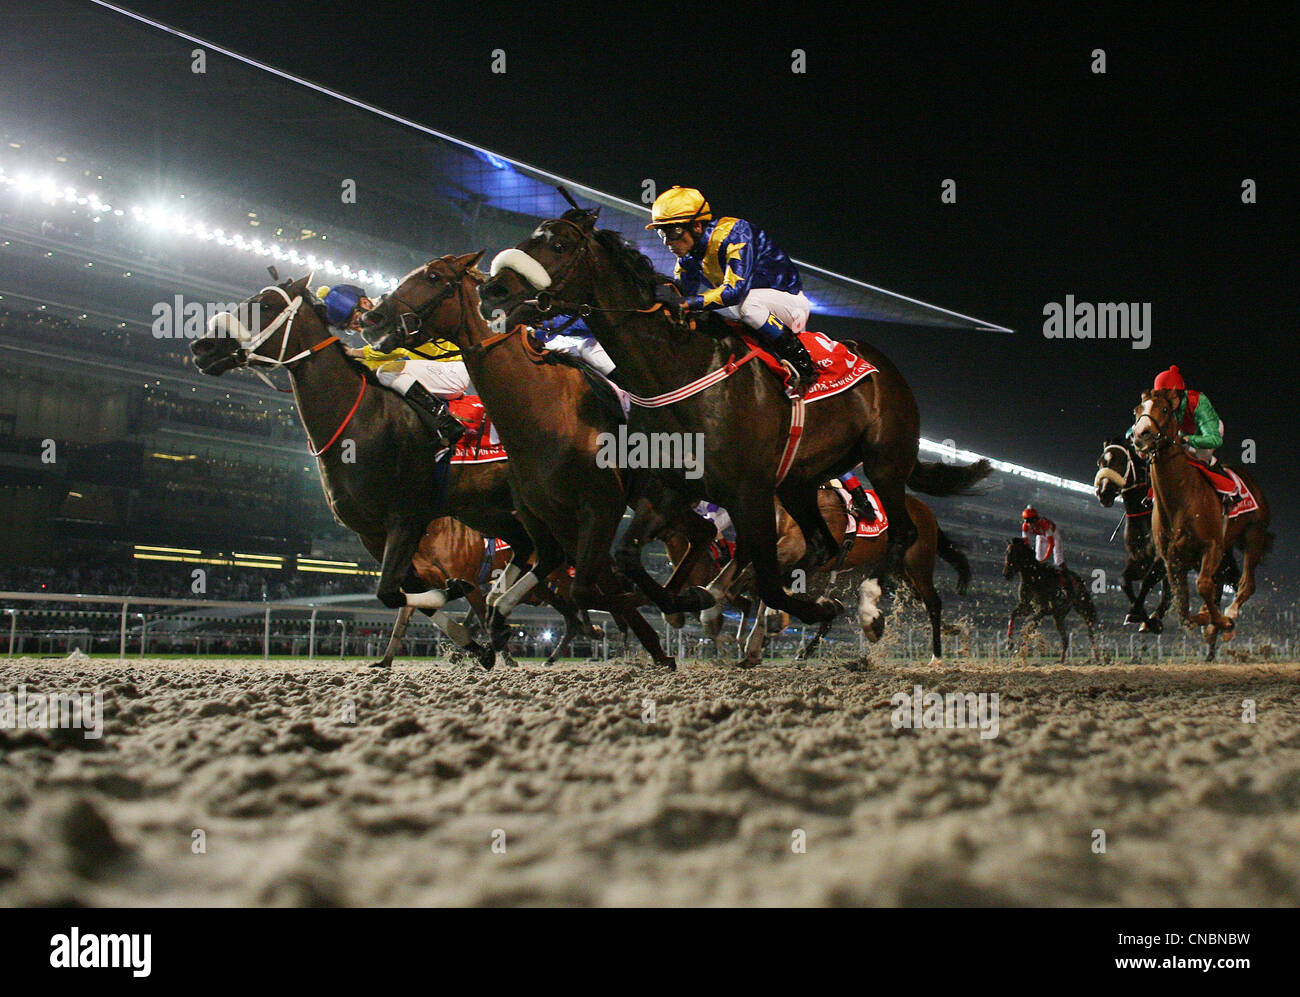 Pferde und jockeys auf dem Meydan Pferderennbahn, Dubai, Vereinigte Arabische Emirate Stockfoto